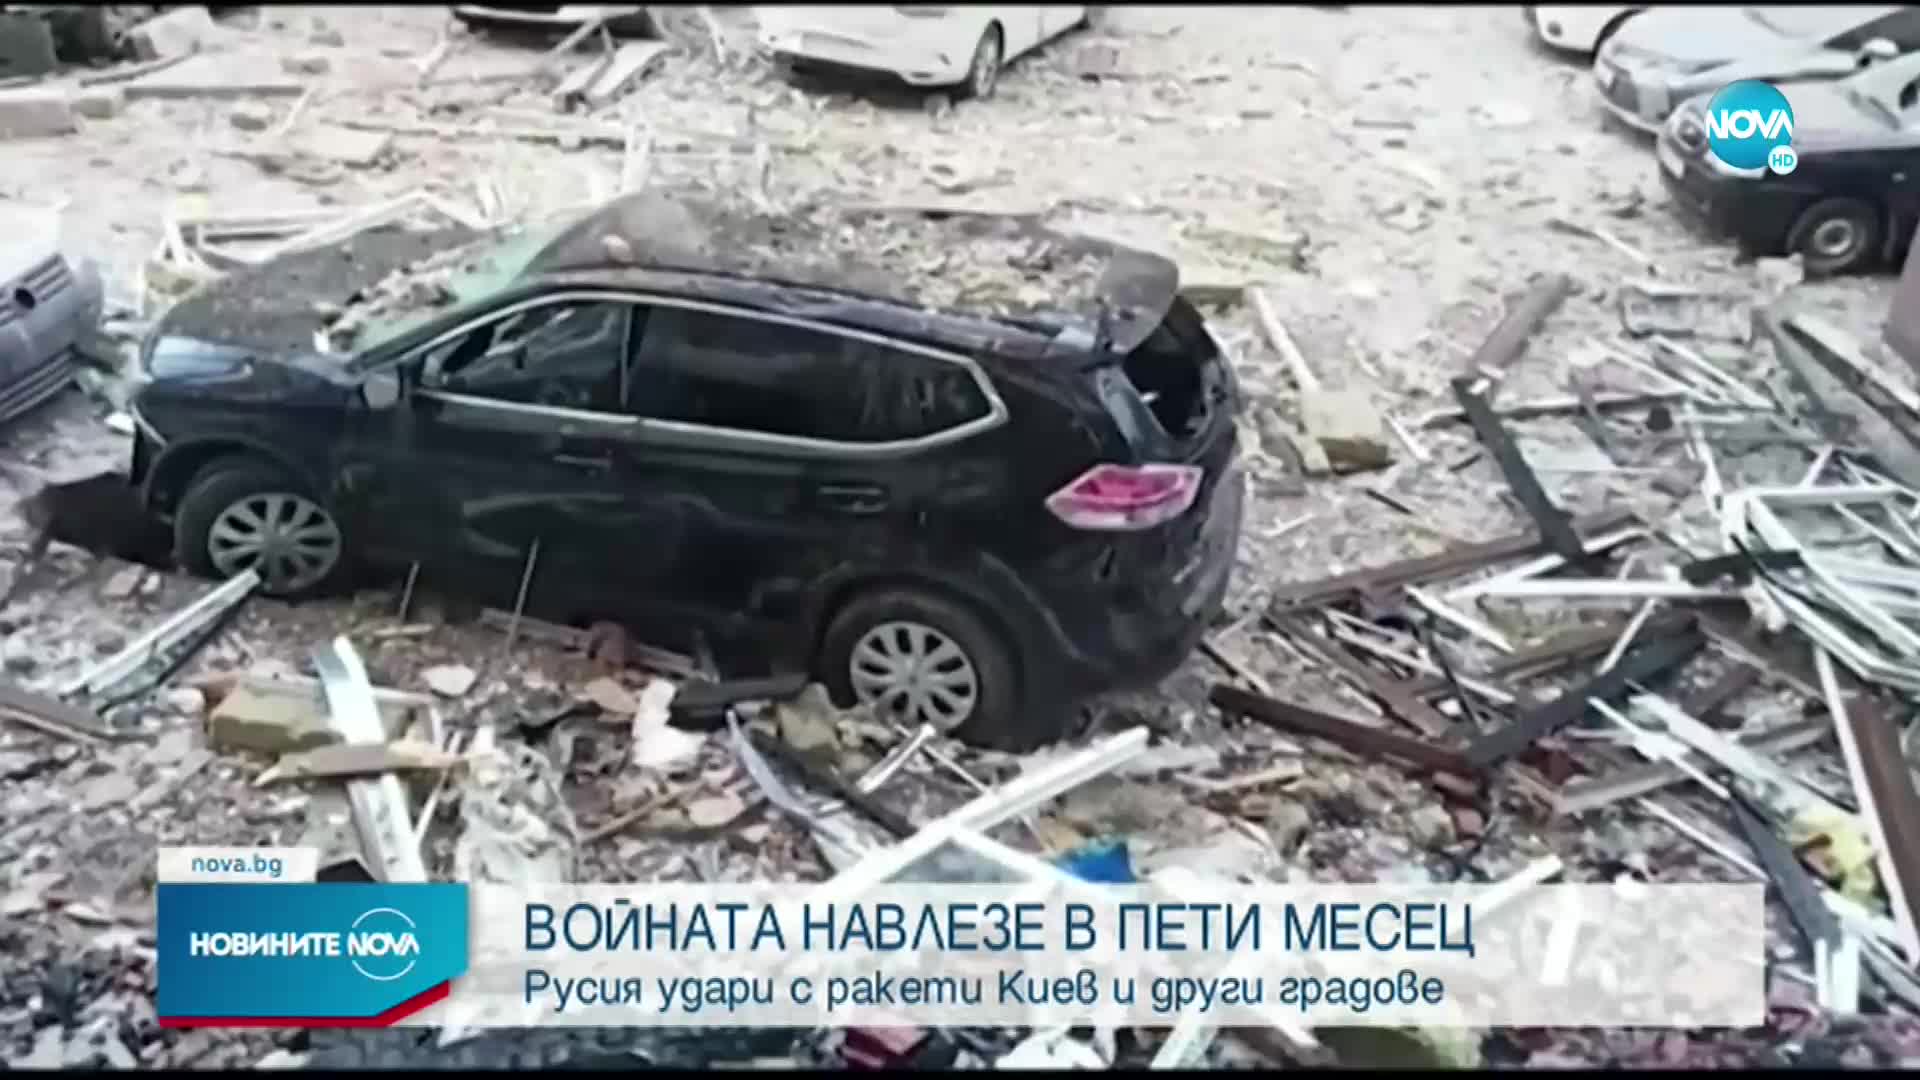 Русия удари с ракети Киев и други градове